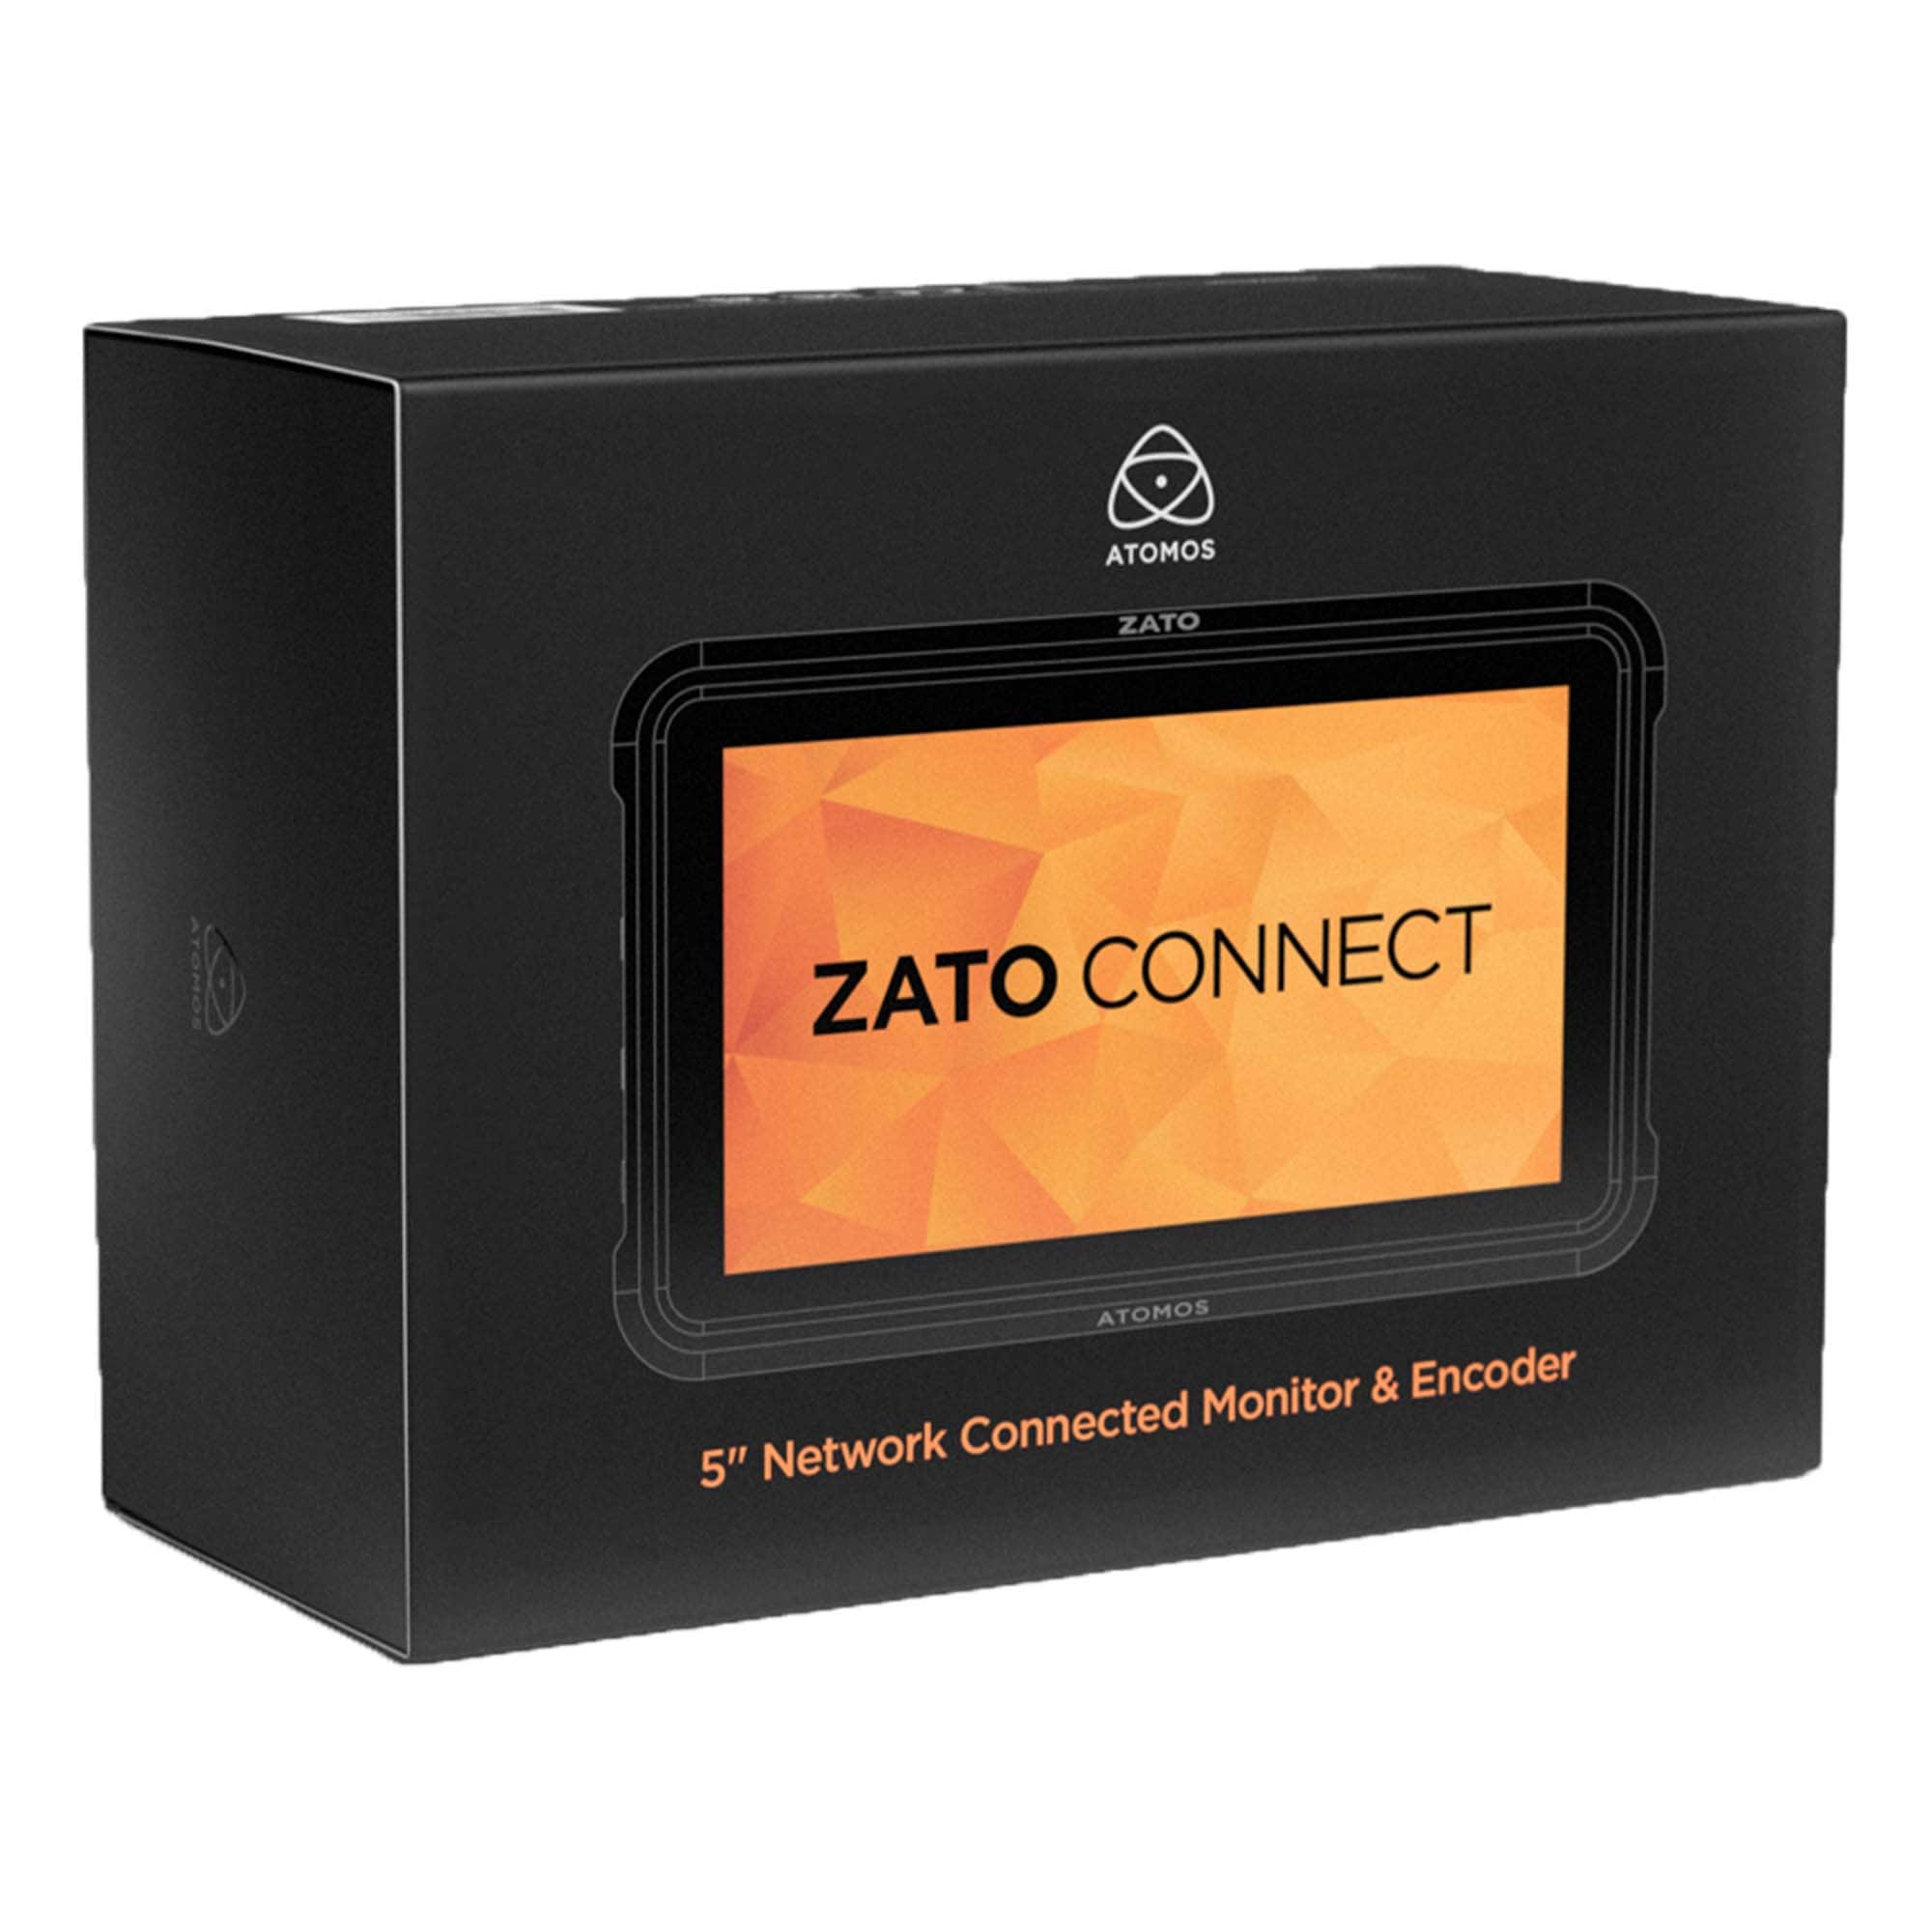 Atomos ZATO CONNECT